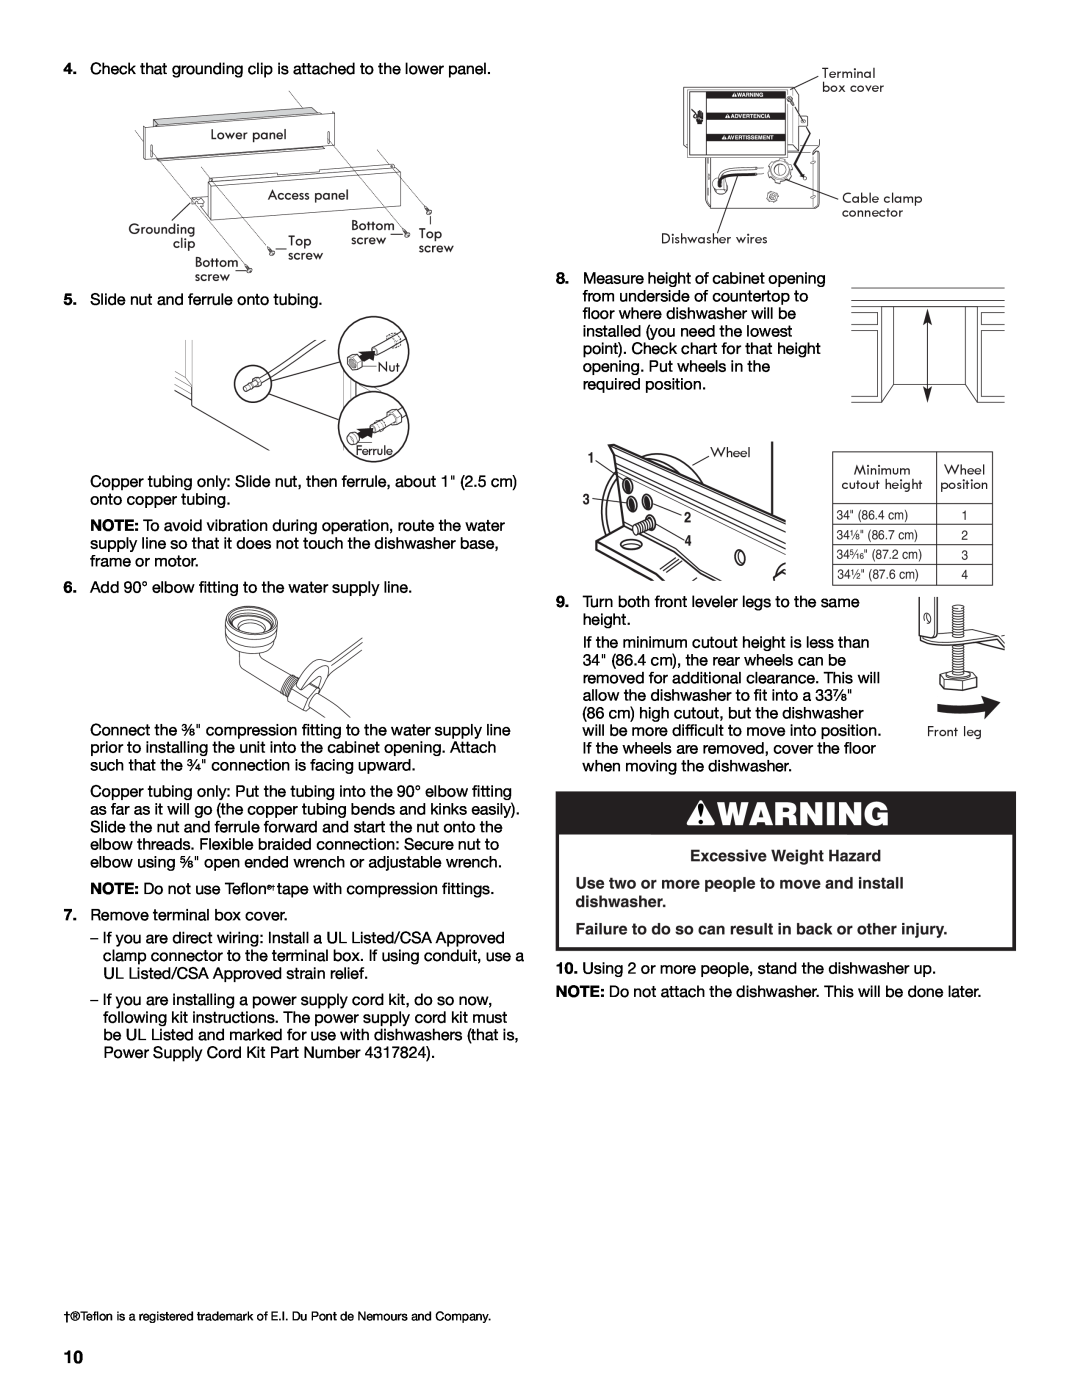 Whirlpool W10282559A installation instructions Slide nut and ferrule onto tubing Nut Ferrule 